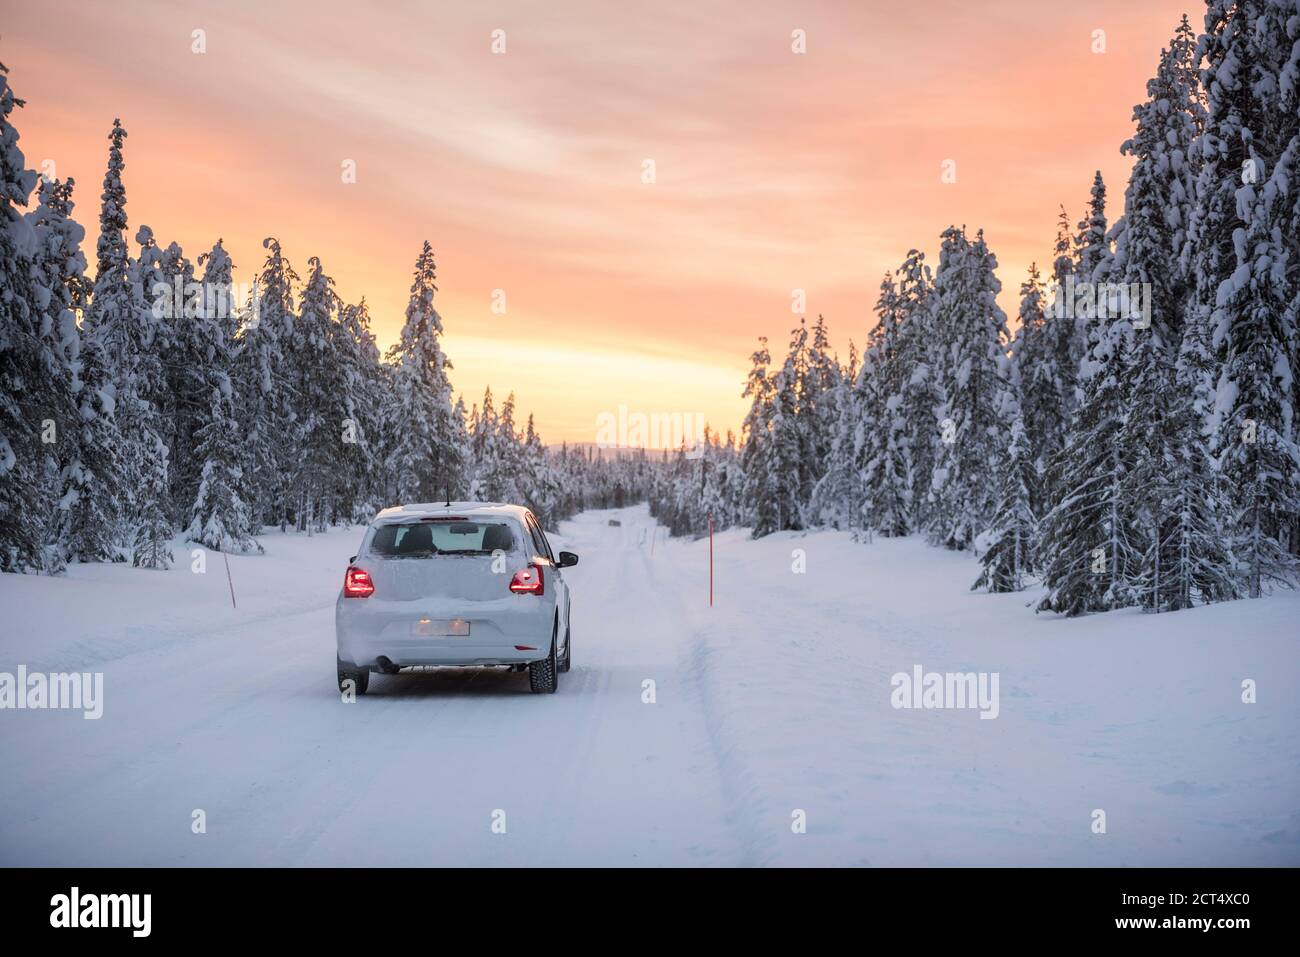 Cattive condizioni di guida su strade ghiacciate pericolose in condizioni invernali scivolose, ghiacciate e innevate in Lapponia, Finlandia, Europa Foto Stock